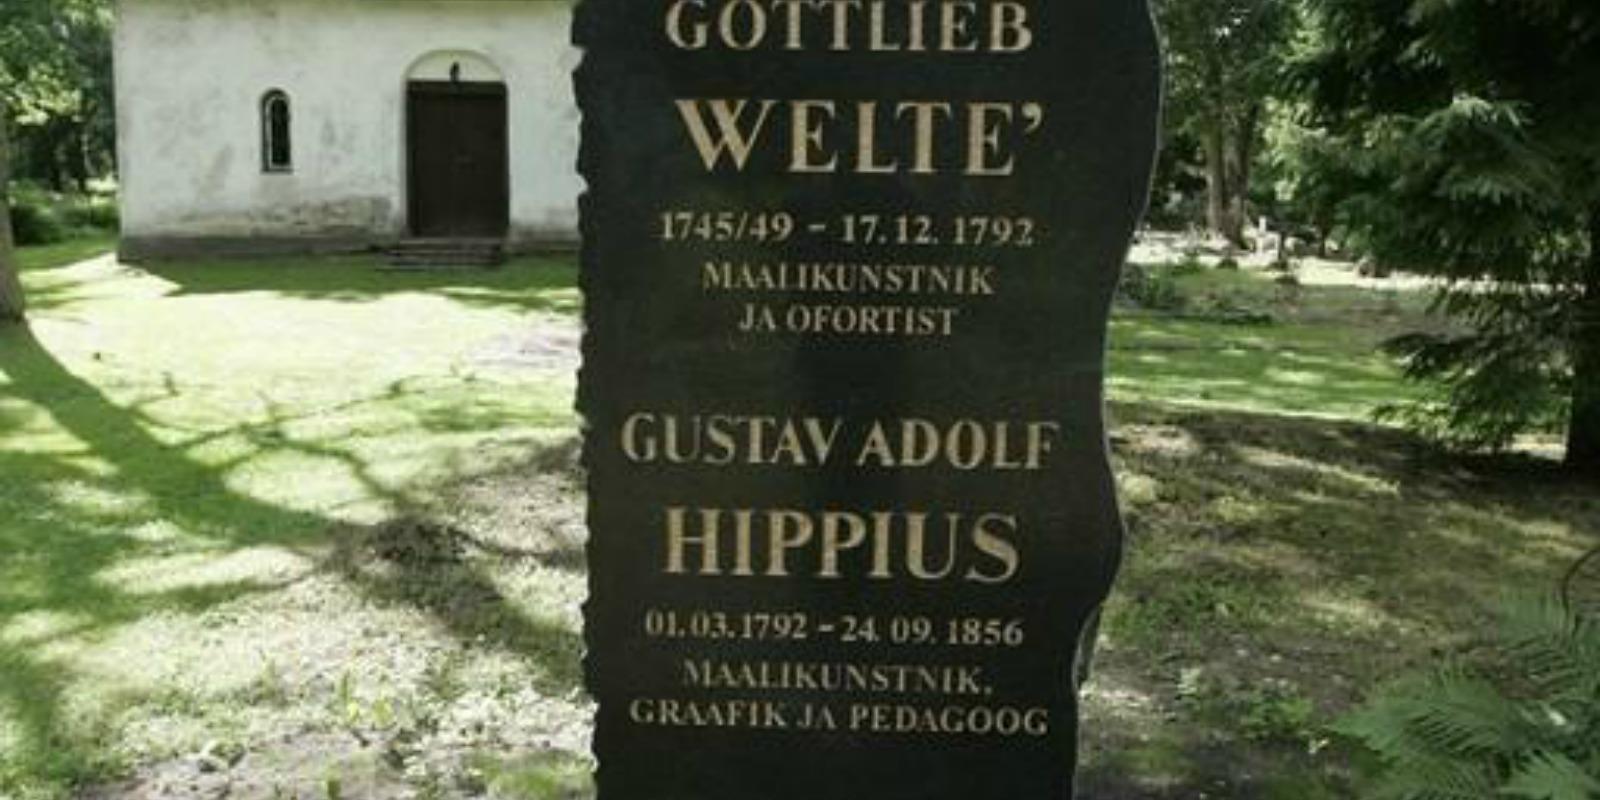 Baltisaksa kunstnike Gottlieb Welté ja Gustav Adolf Hippiuse mälestuskivi Hageris